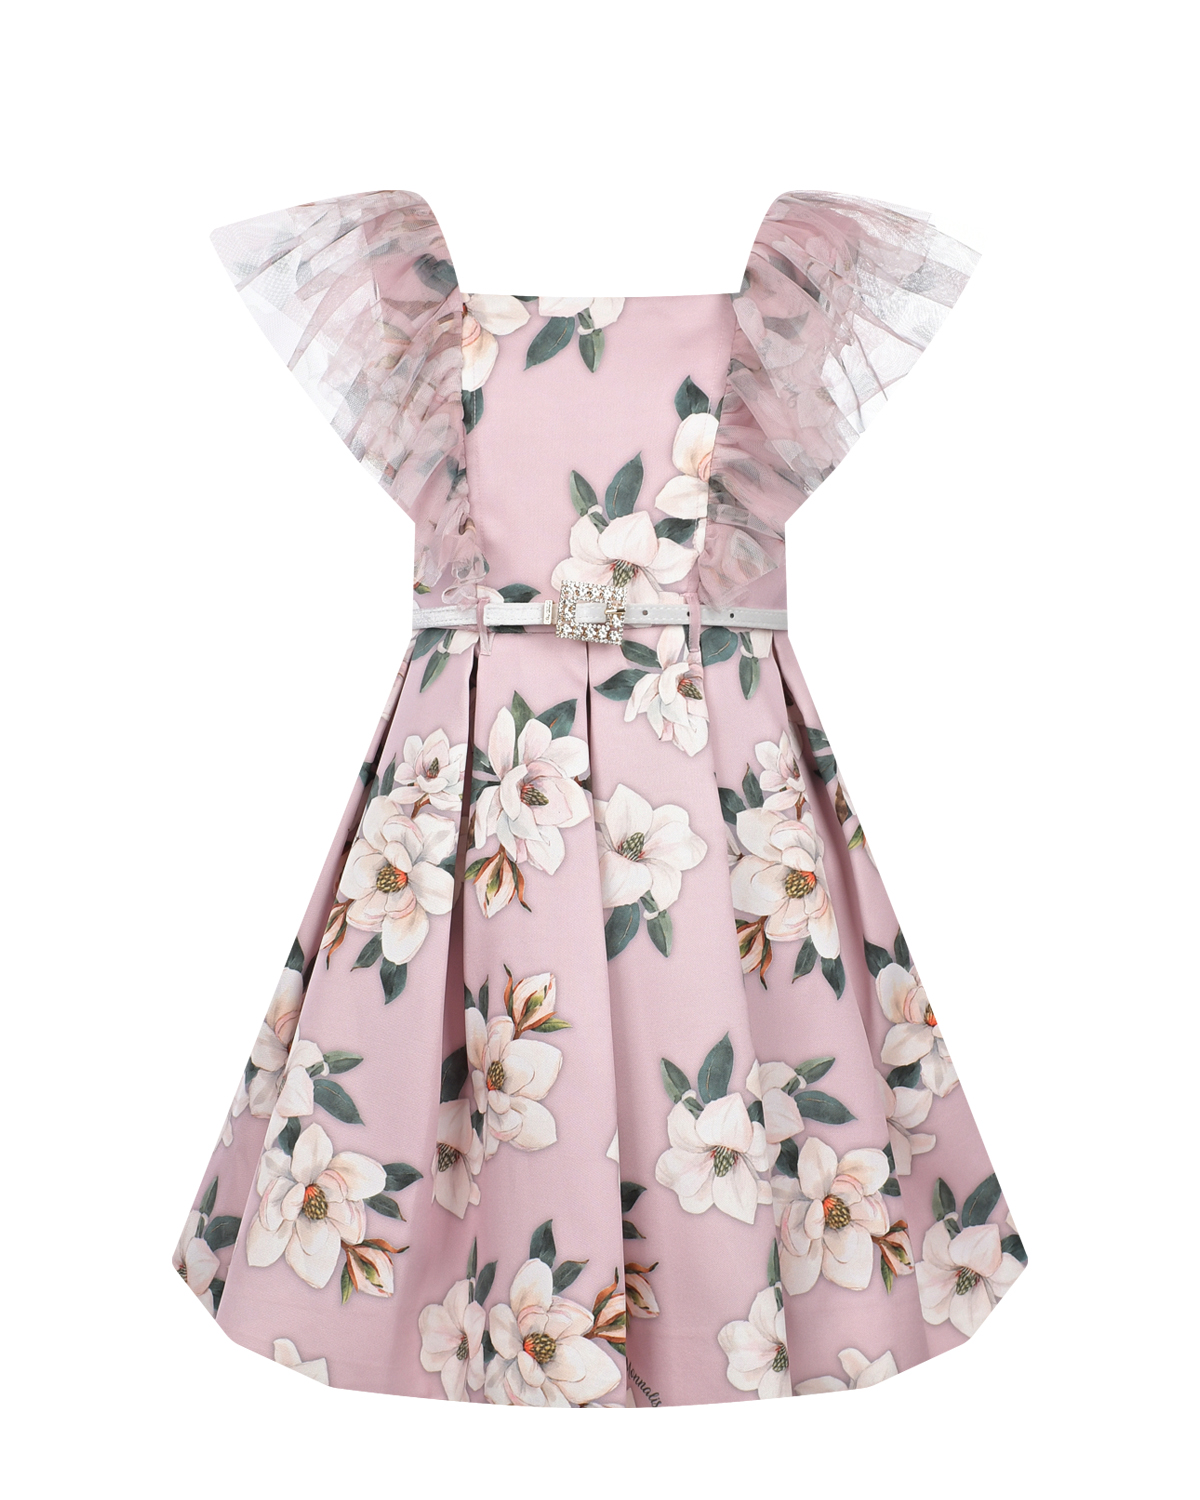 Розовое платье с цветочным принтом Monnalisa розовое многослойное платье gulliver 152